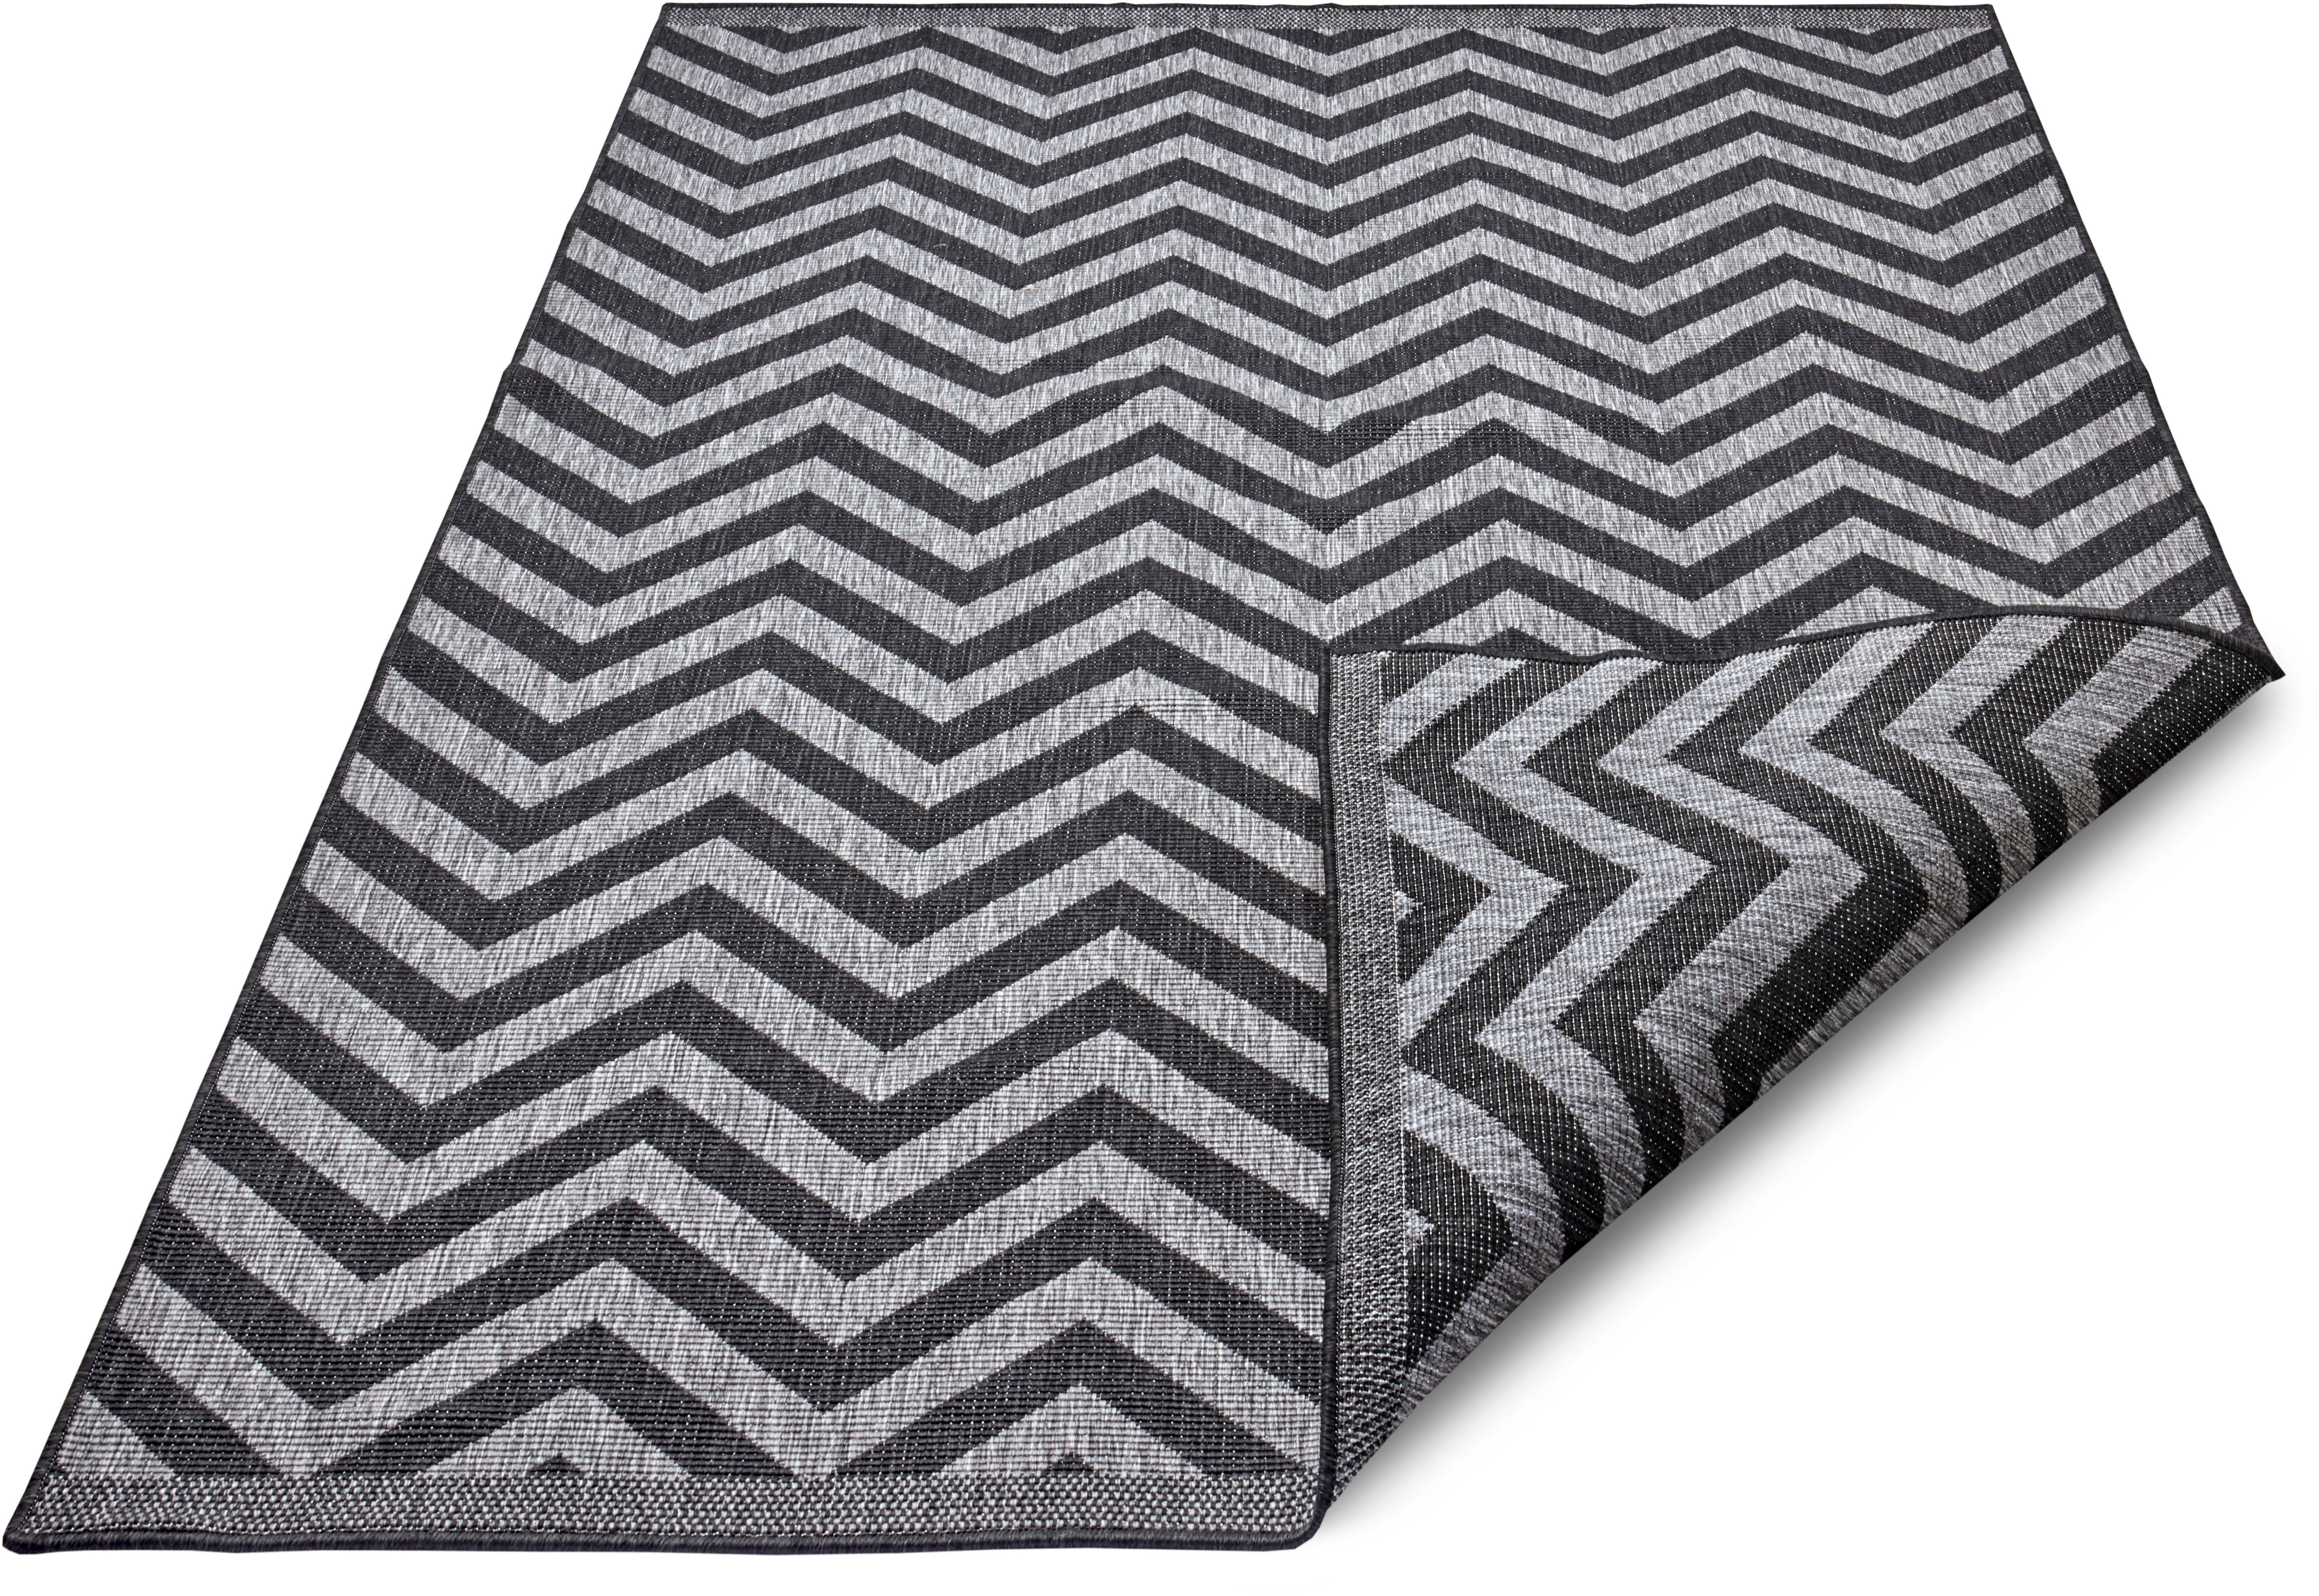 Binnen & buiten vloerkleed zigzag Palma - zilver/zwart 160x230 cm